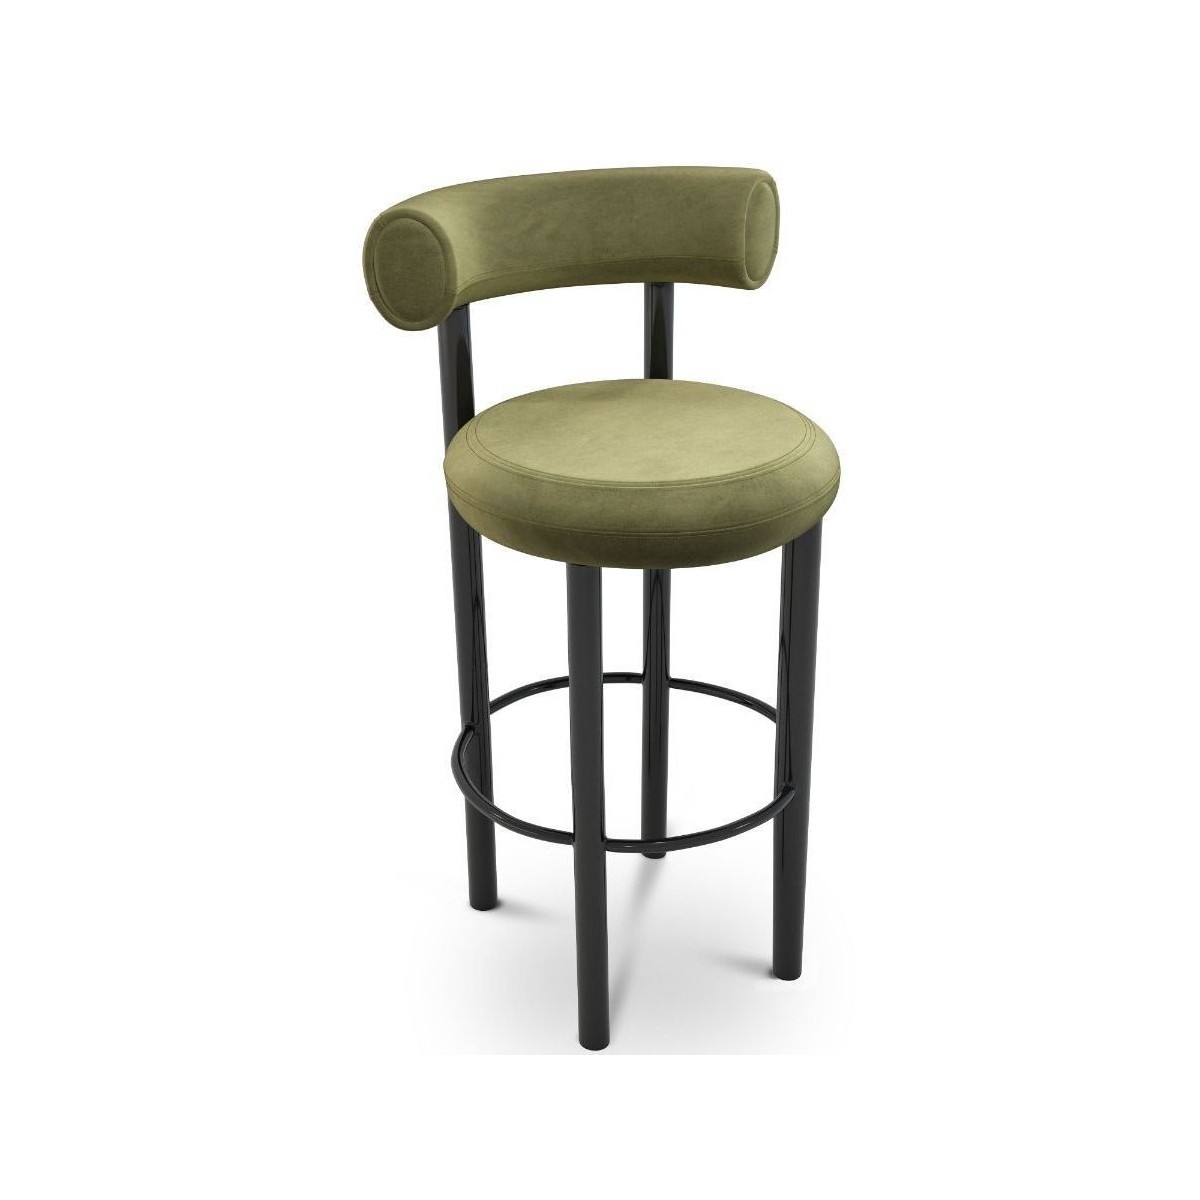 Cassia 41 velvet - Fat bar stool